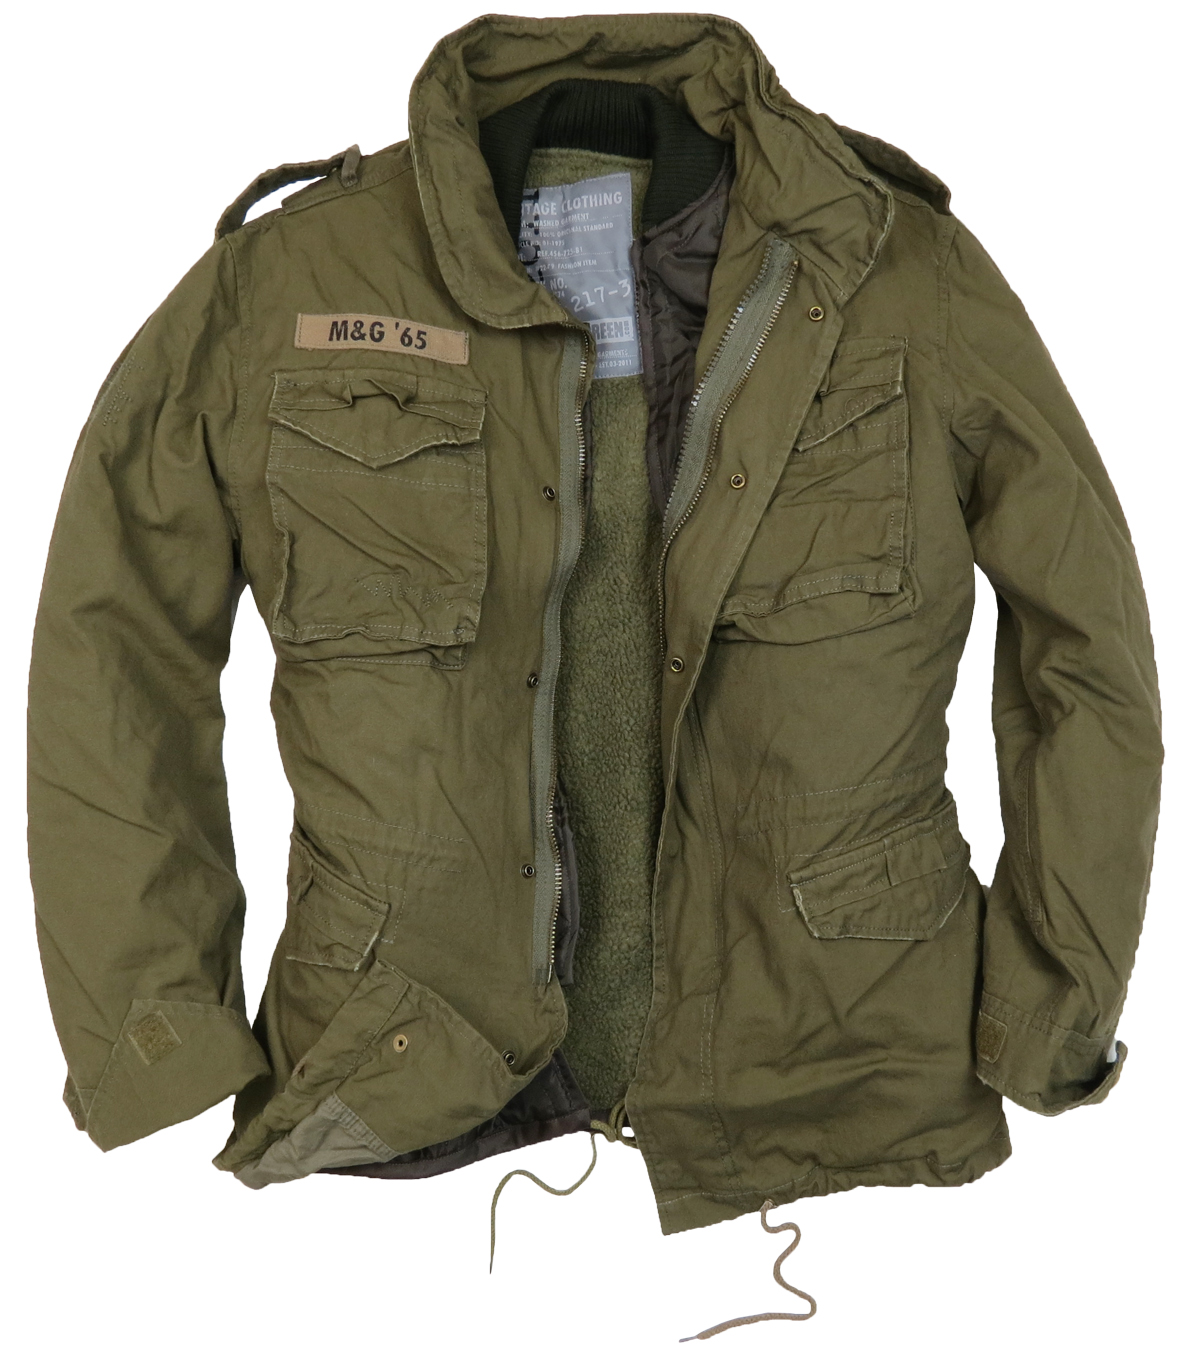 m65 rambo jacket